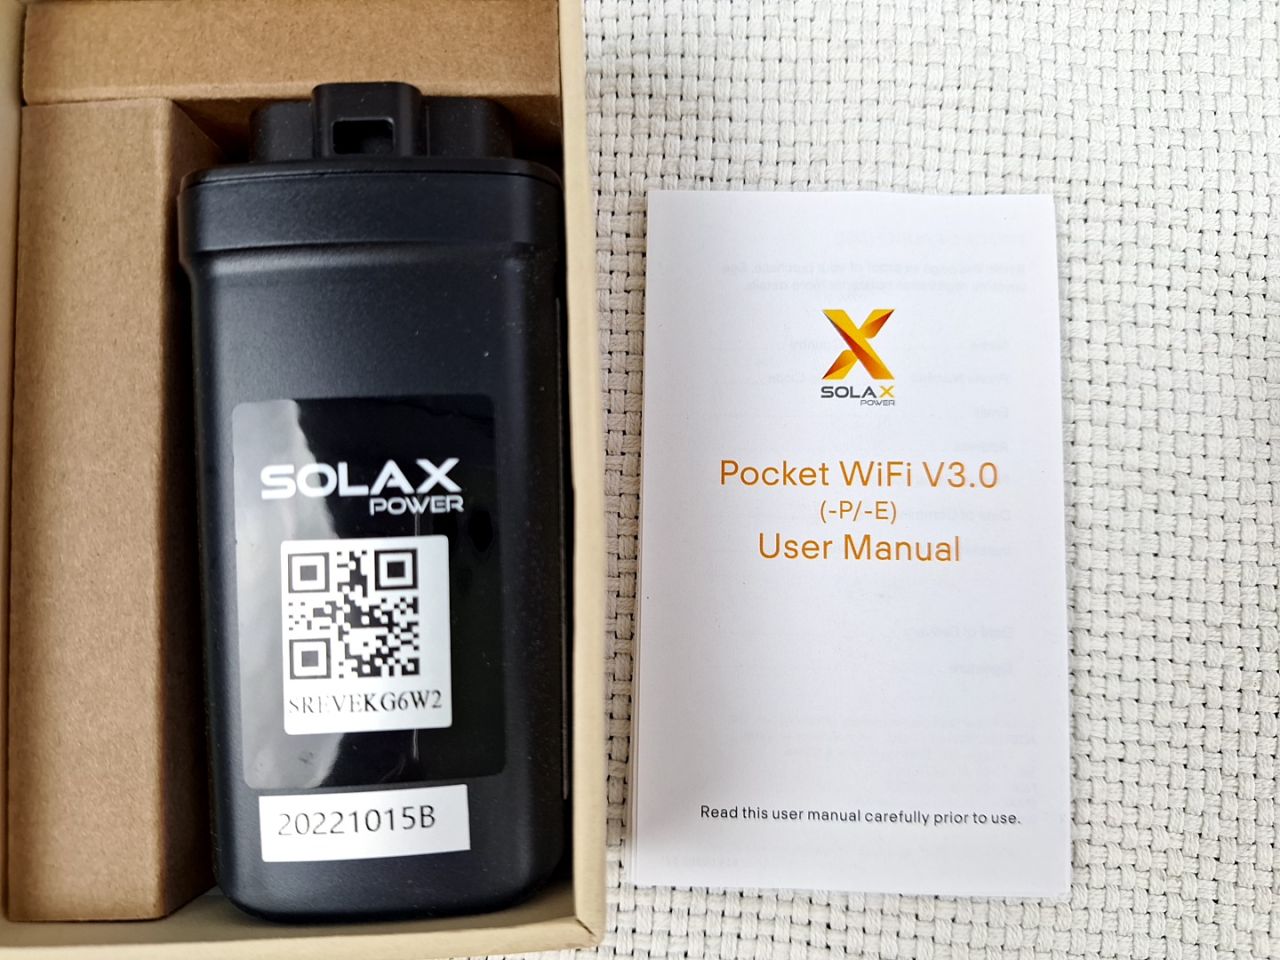 Kapesní WiFi V3.0 SolaX Power 